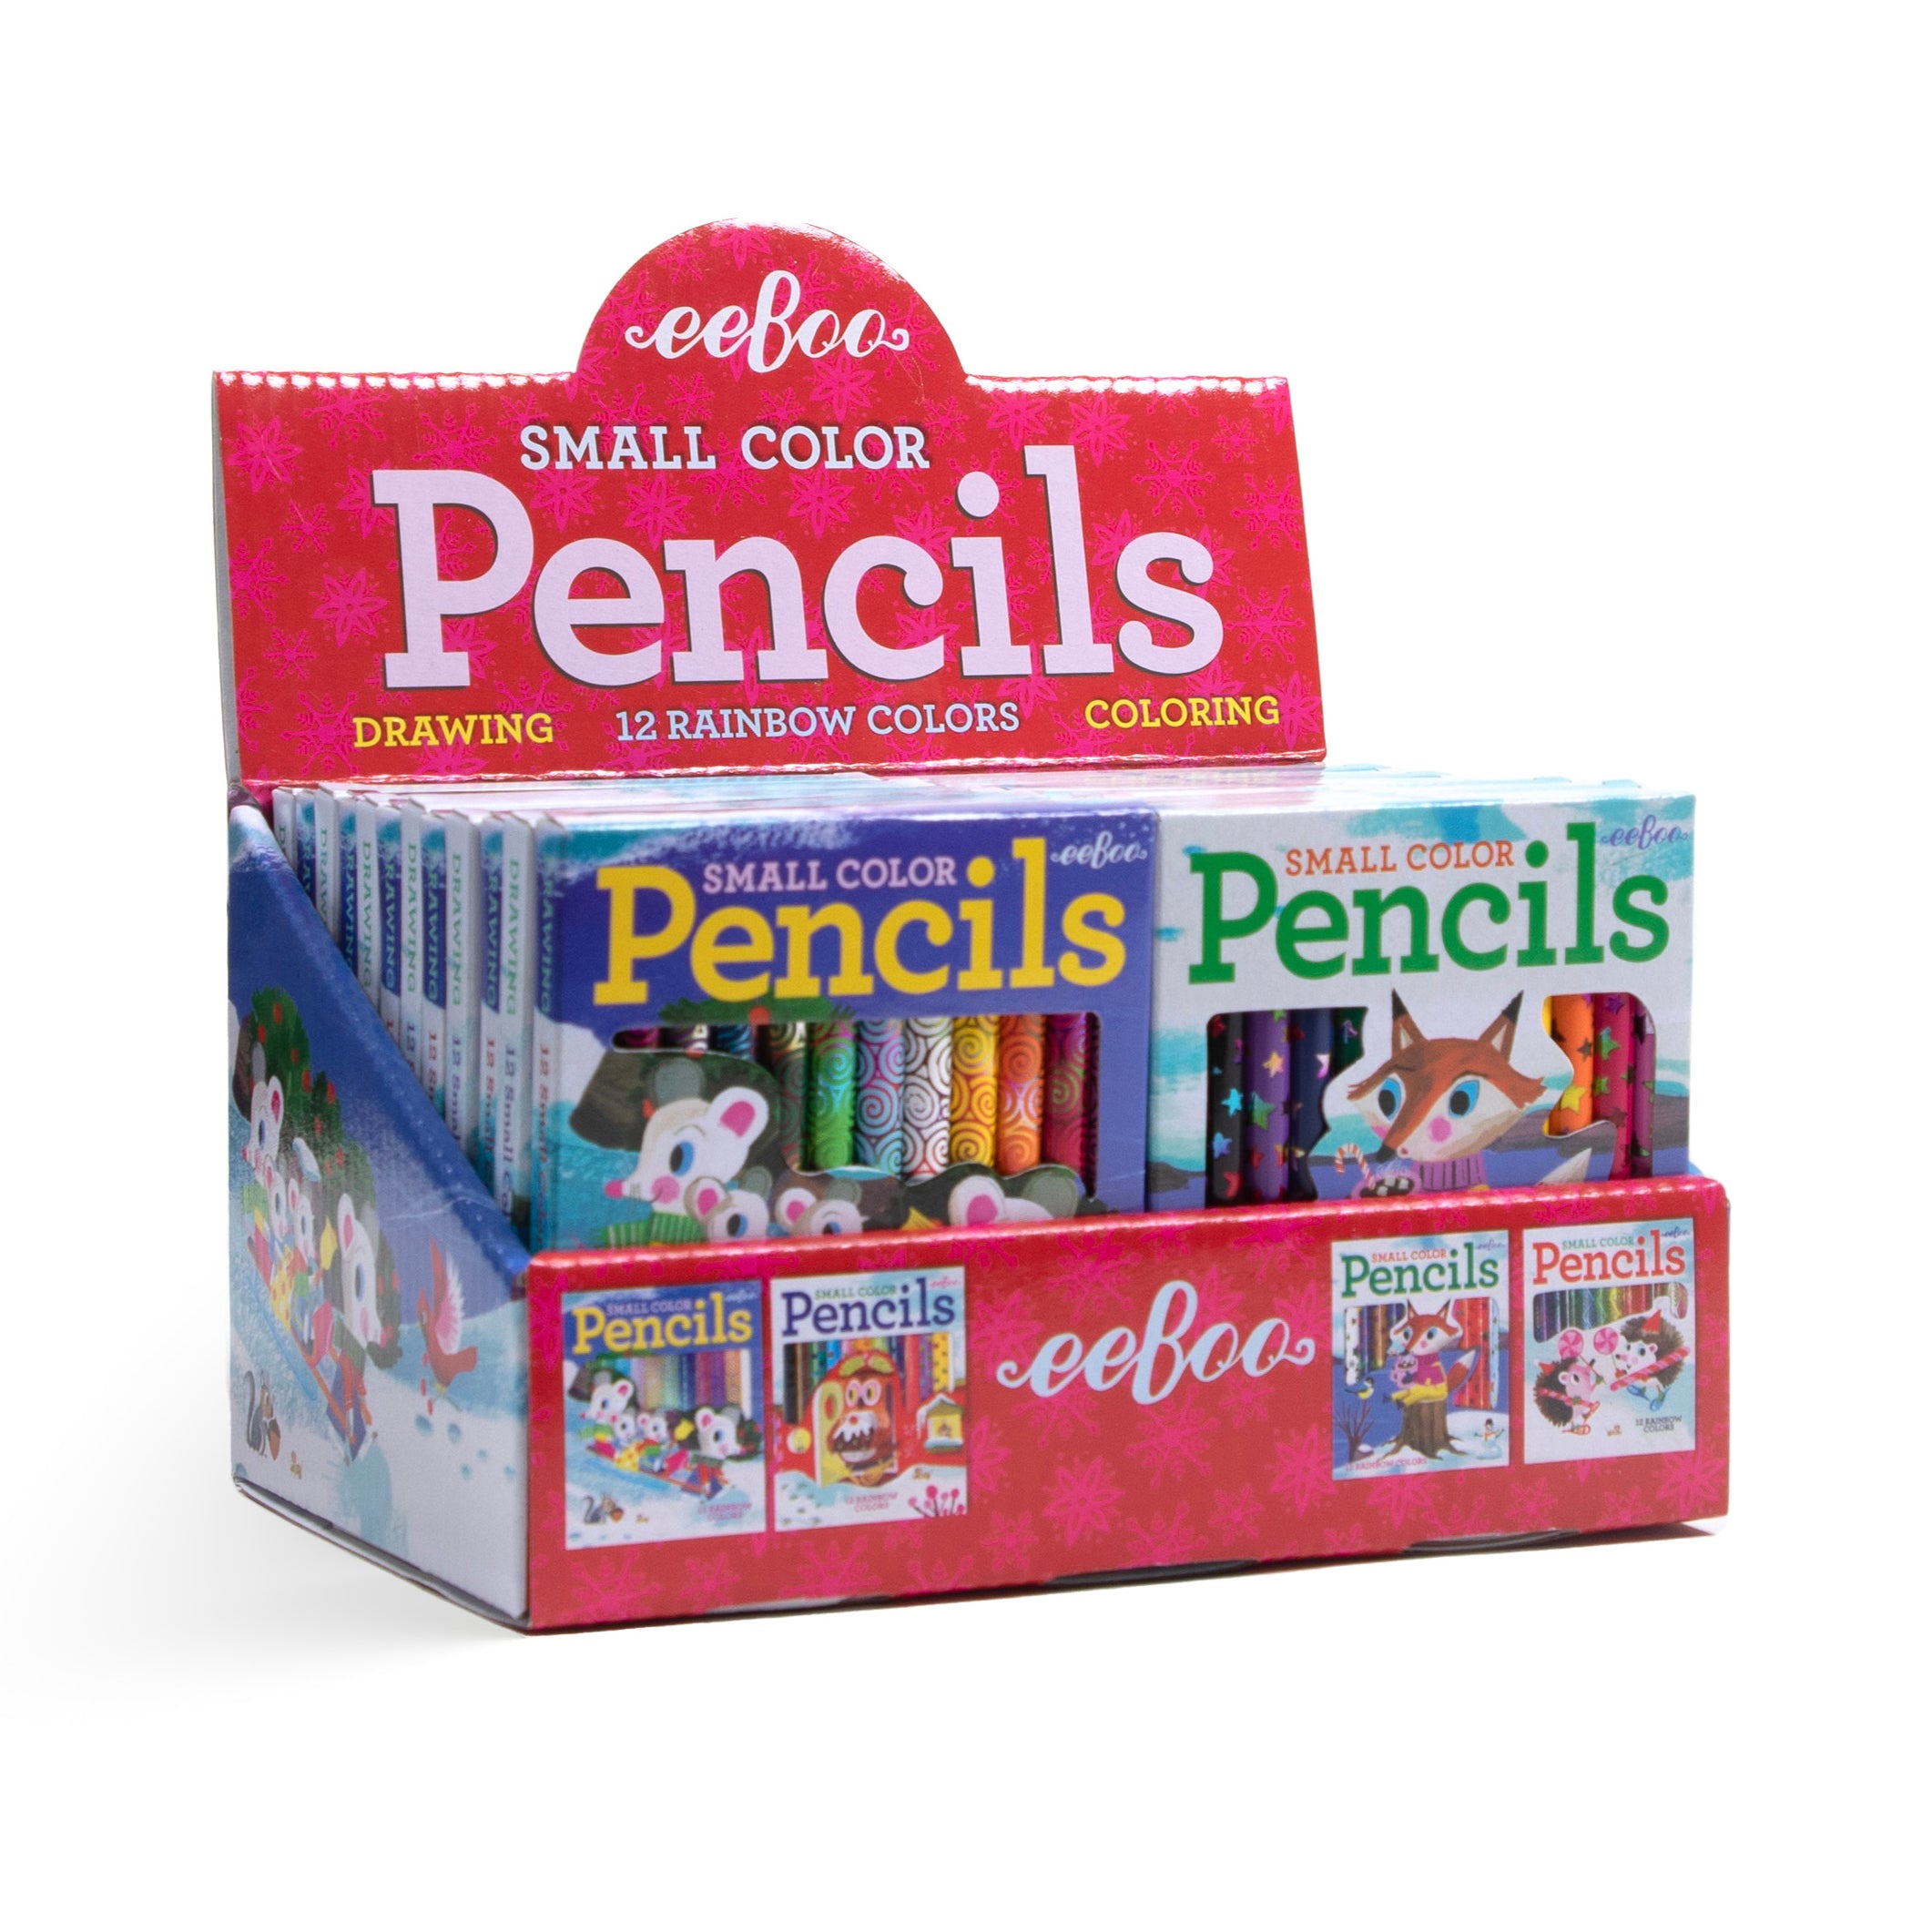 2 PCS Premium Quality Rainbow Colored Pencils Set for Kids